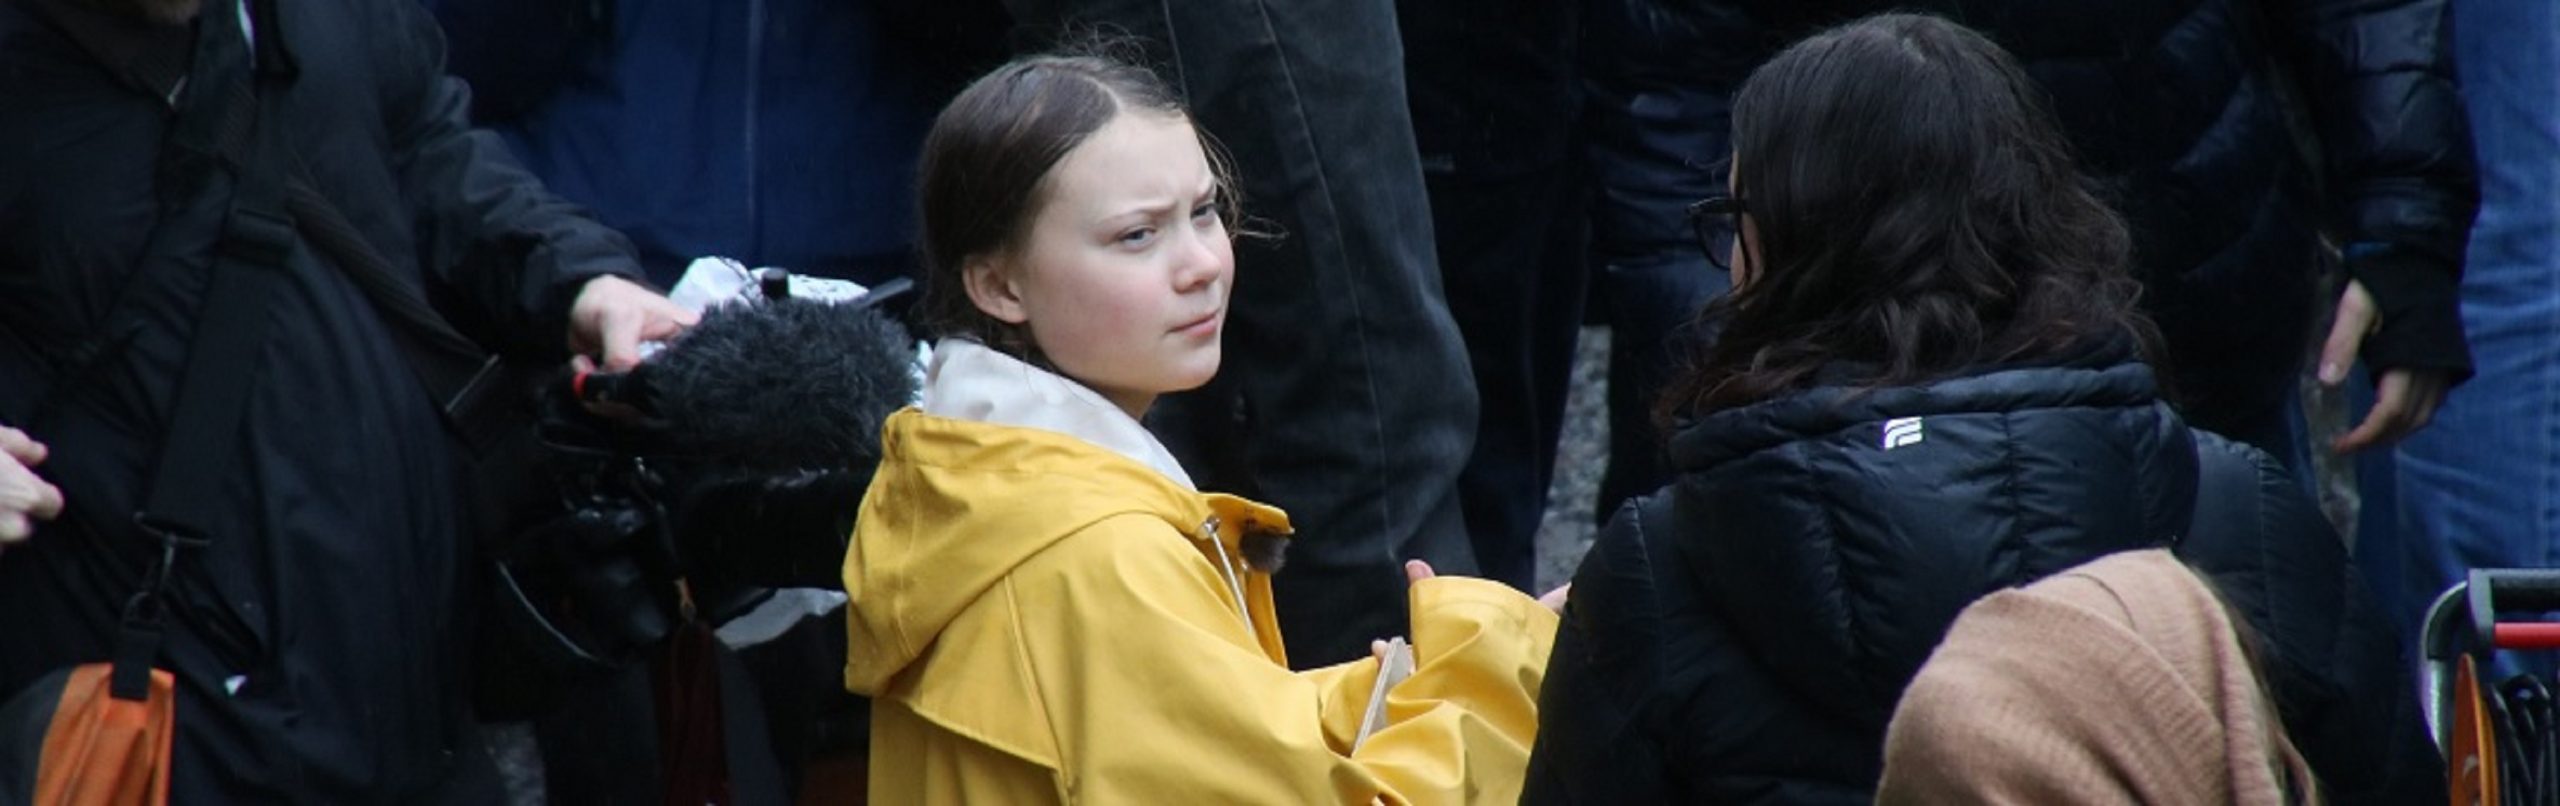 VN zette in 1992 ook al een Greta Thunberg in. Zoek de overeenkomsten: dit klimaatmeisje sloeg als 12-jarige alarm